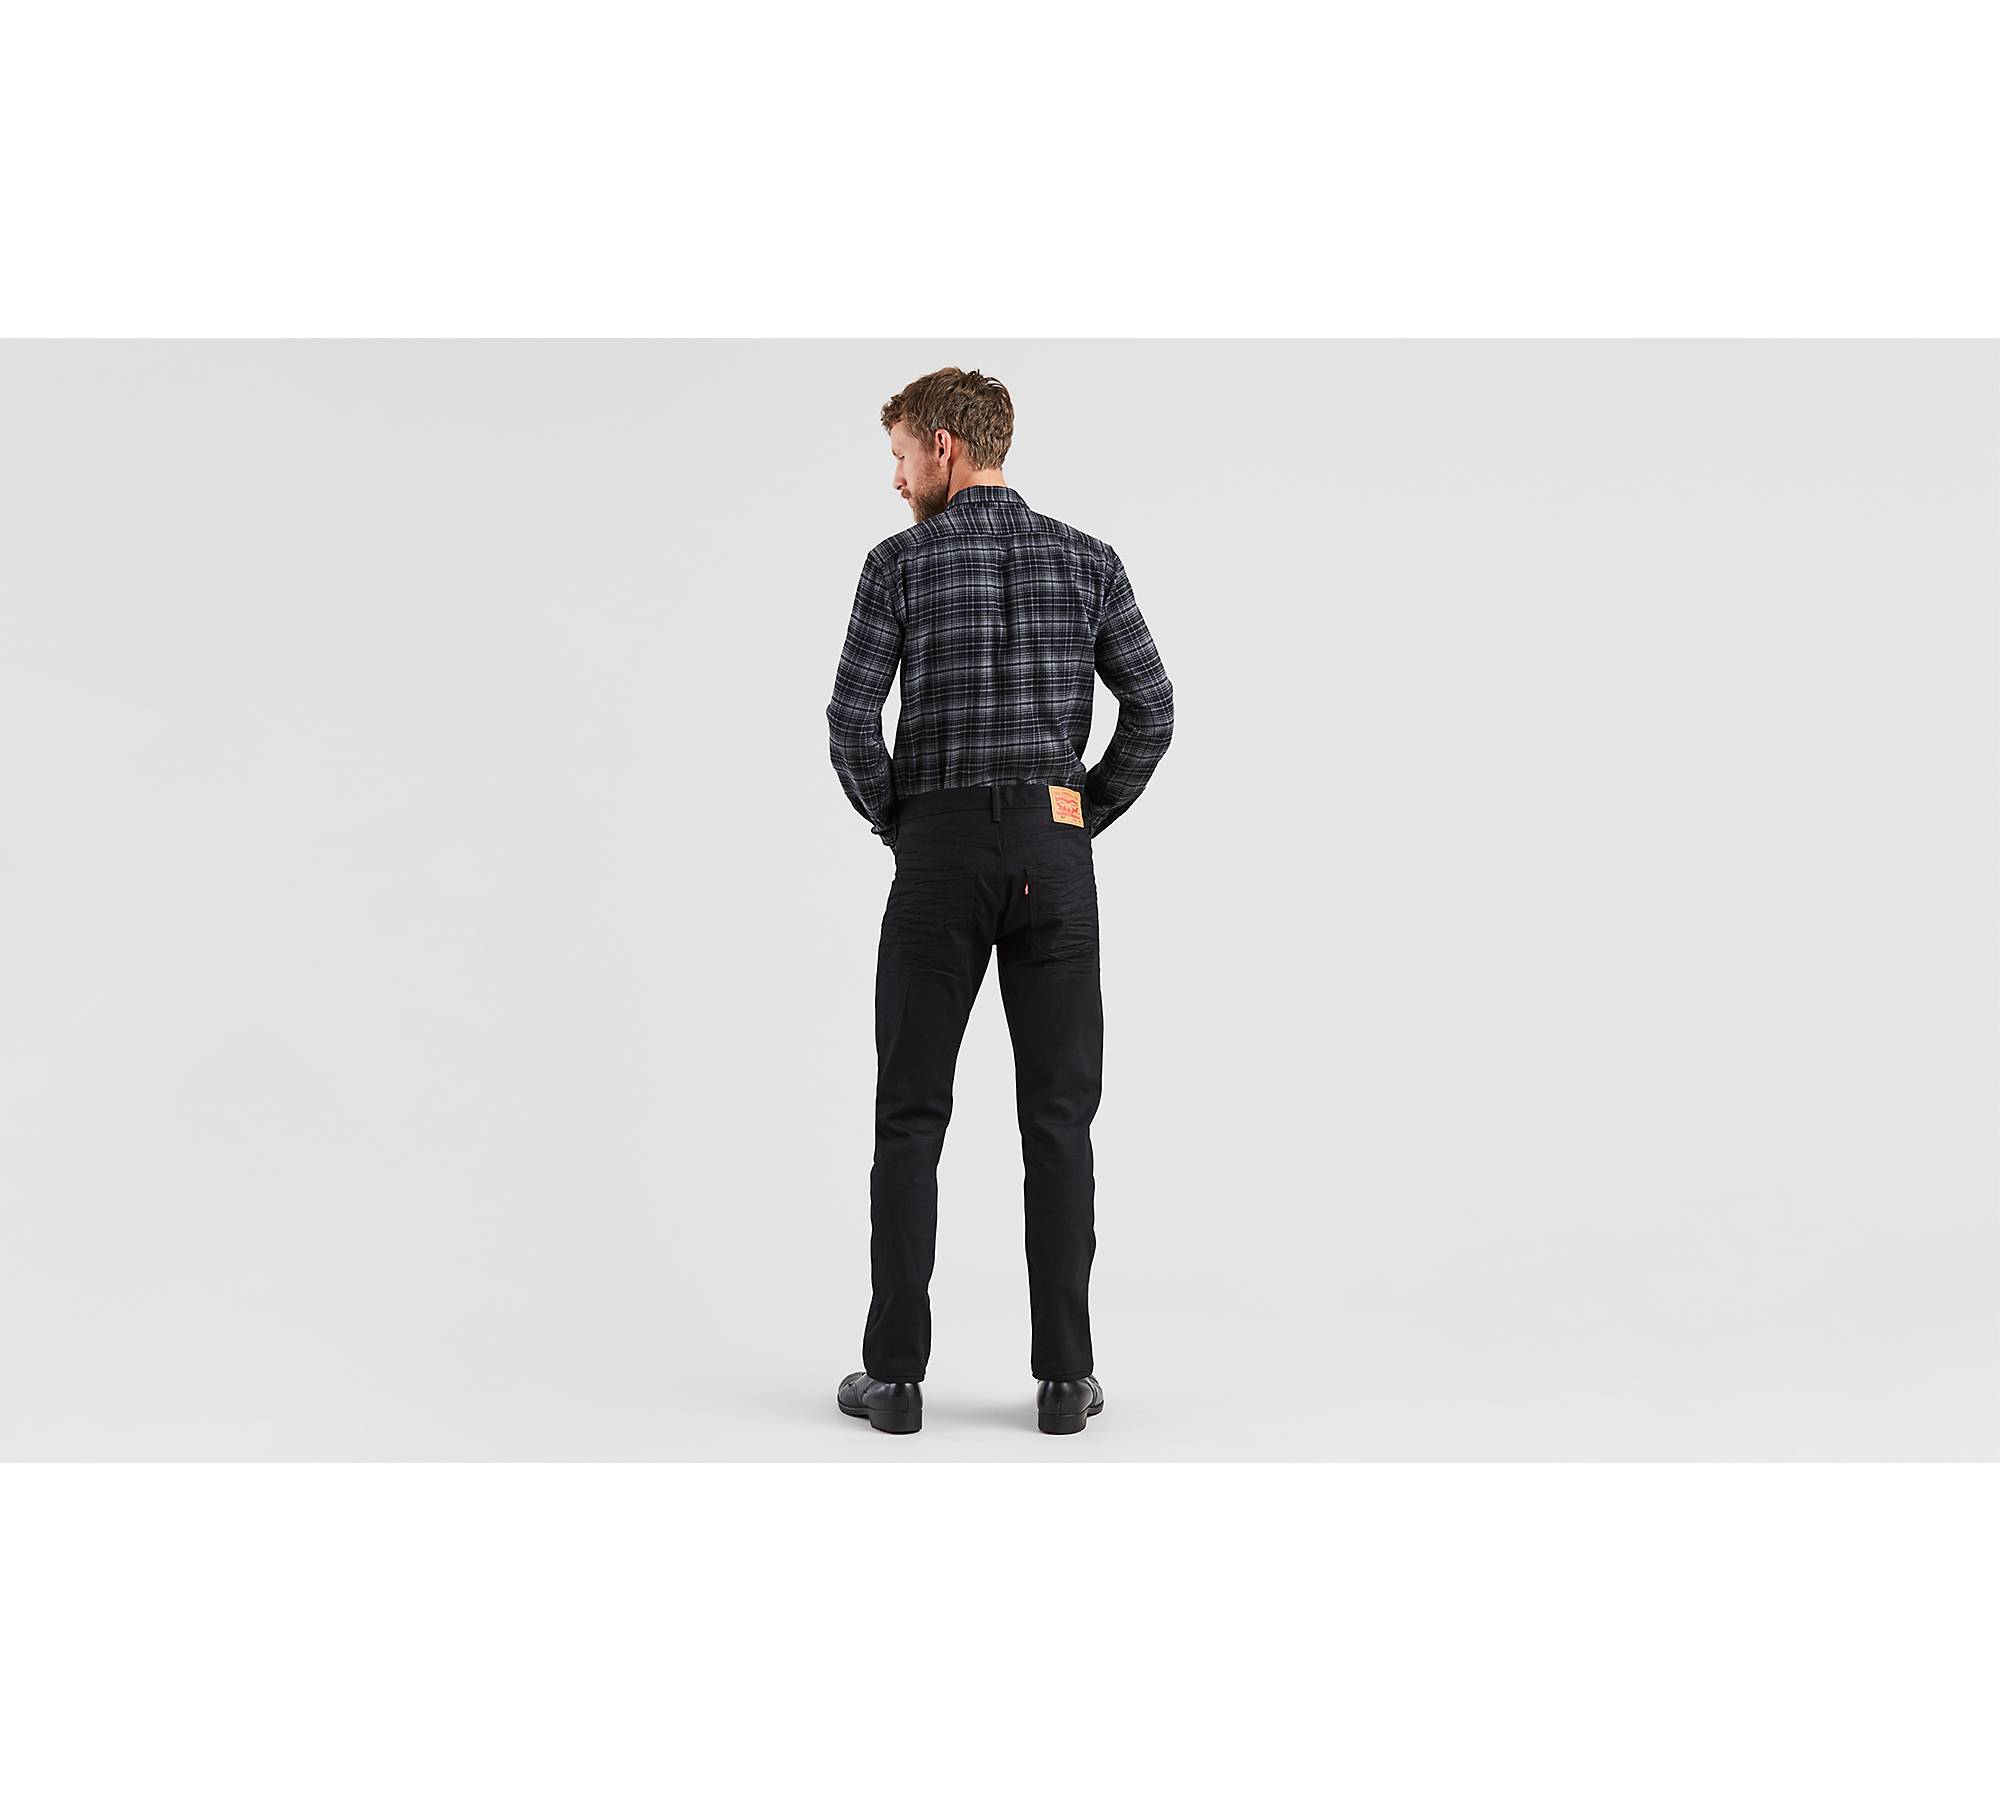 501® Original Fit Men's Jeans - Black | Levi's® US